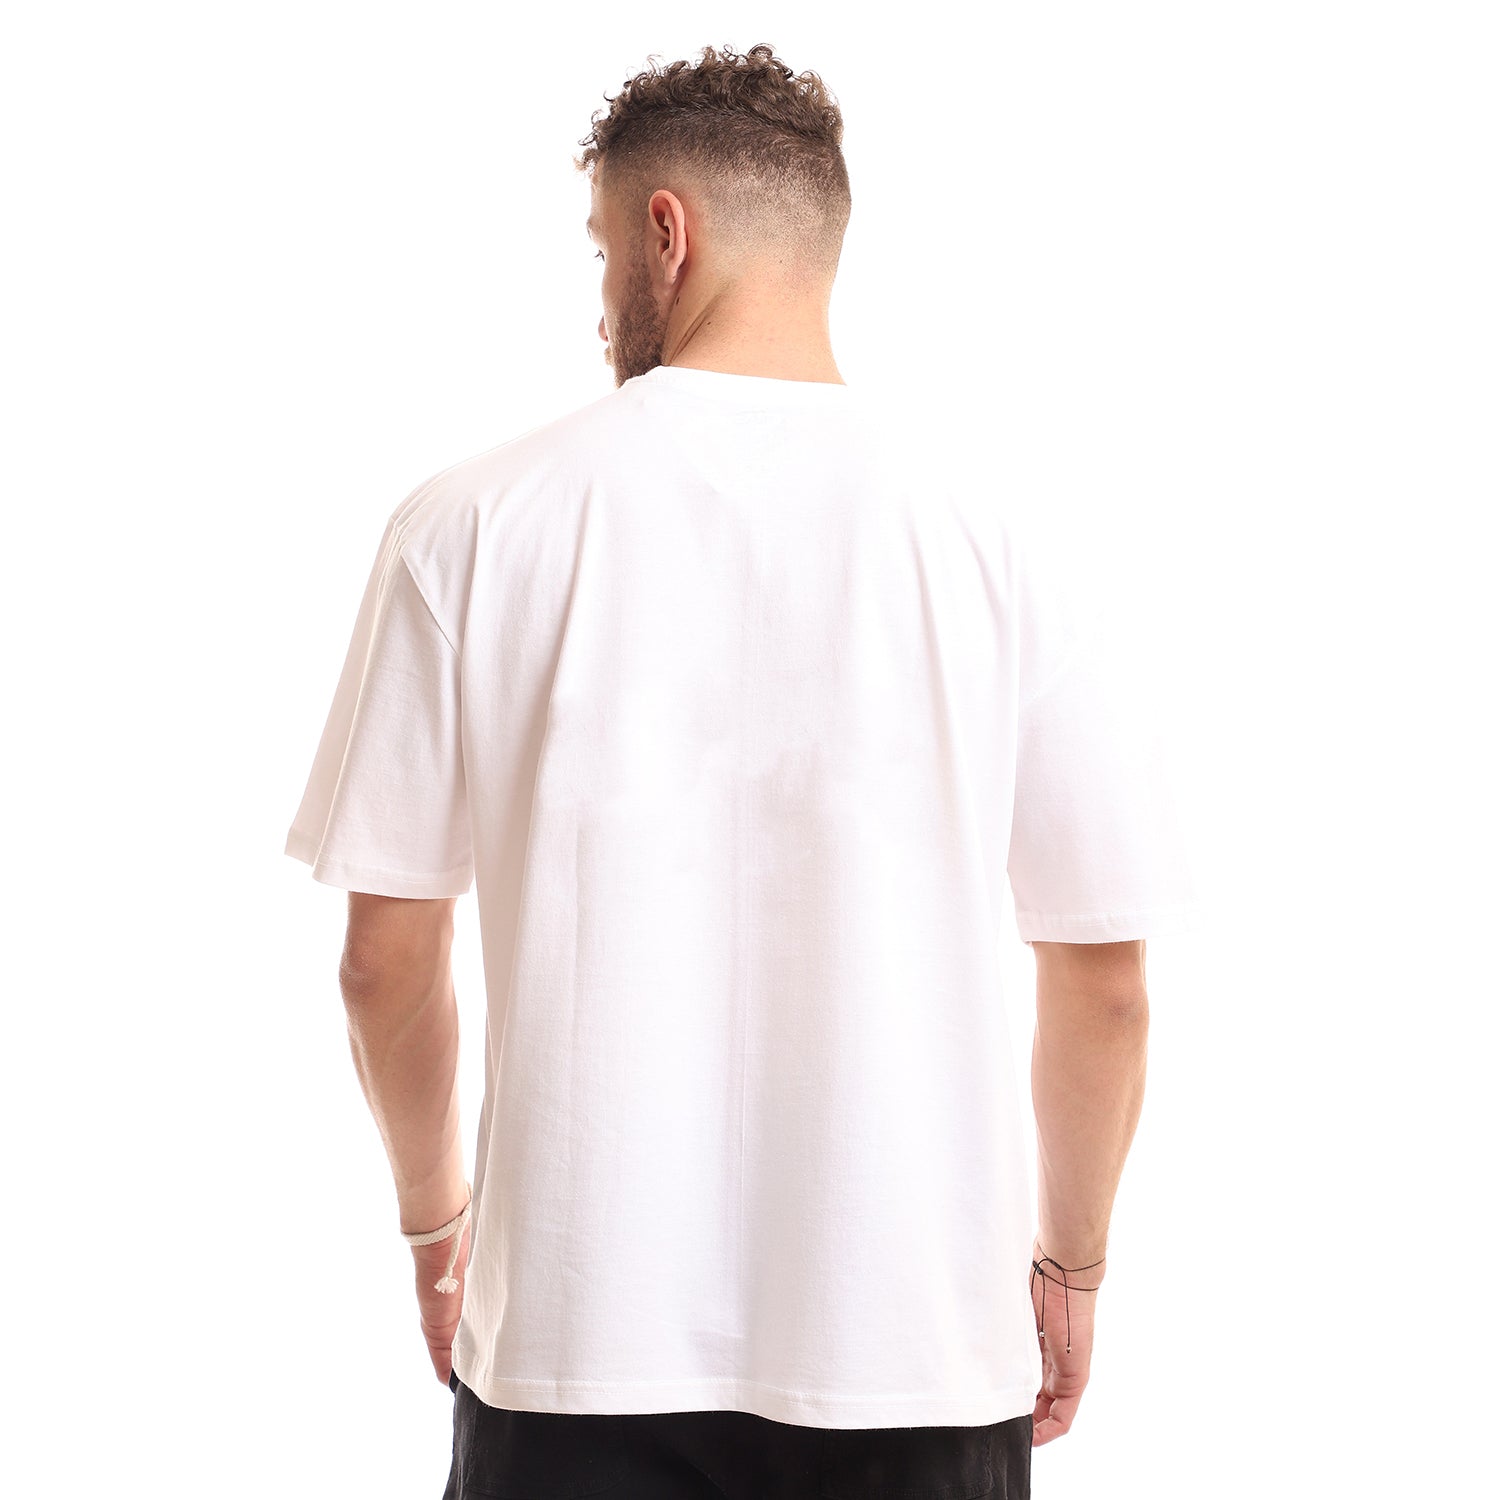 Basic Unisex Oversized T-Shirt - white